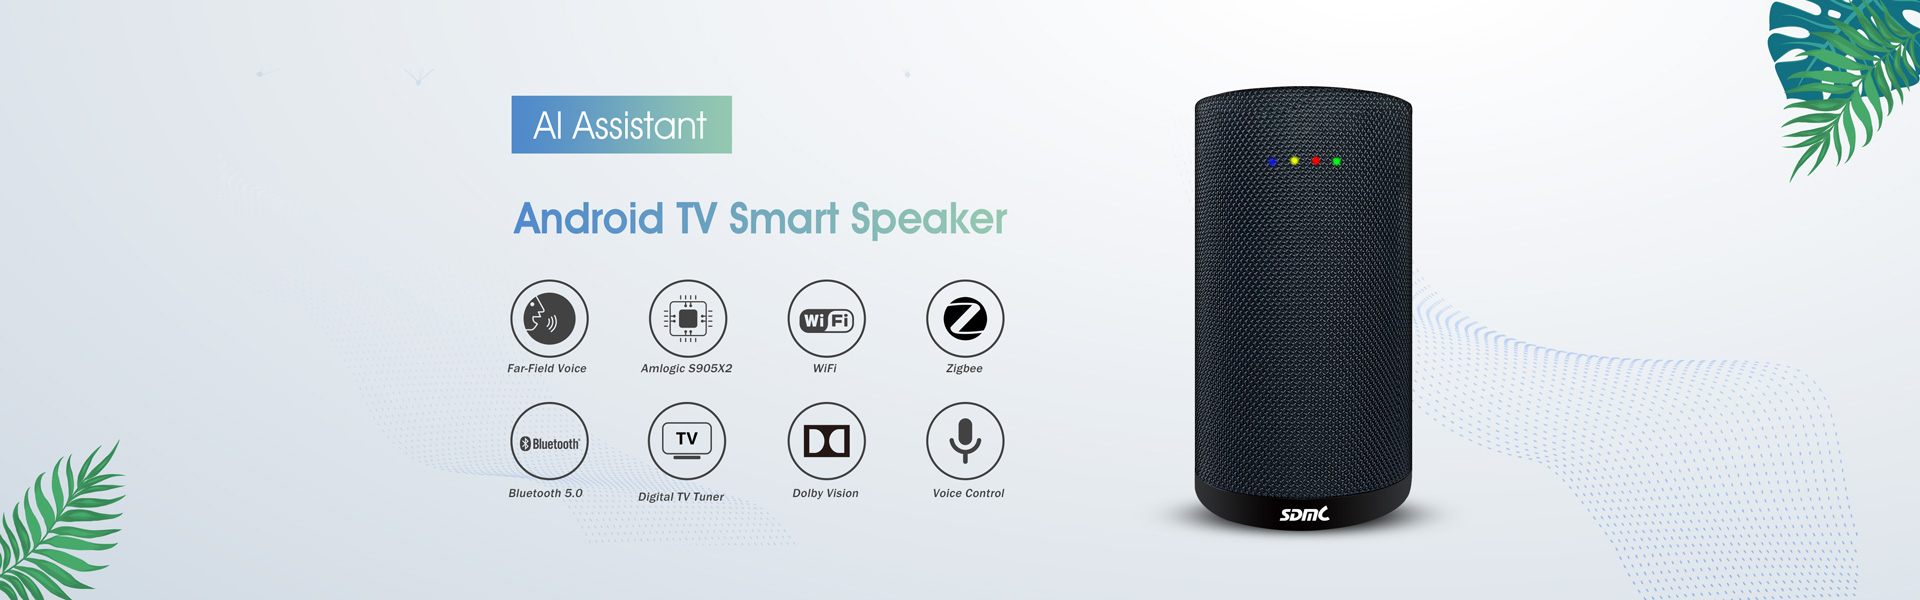 Android TV Box, wifi mesh router, smart speaker,Shenzhen SDMC Technology Co.,Ltd